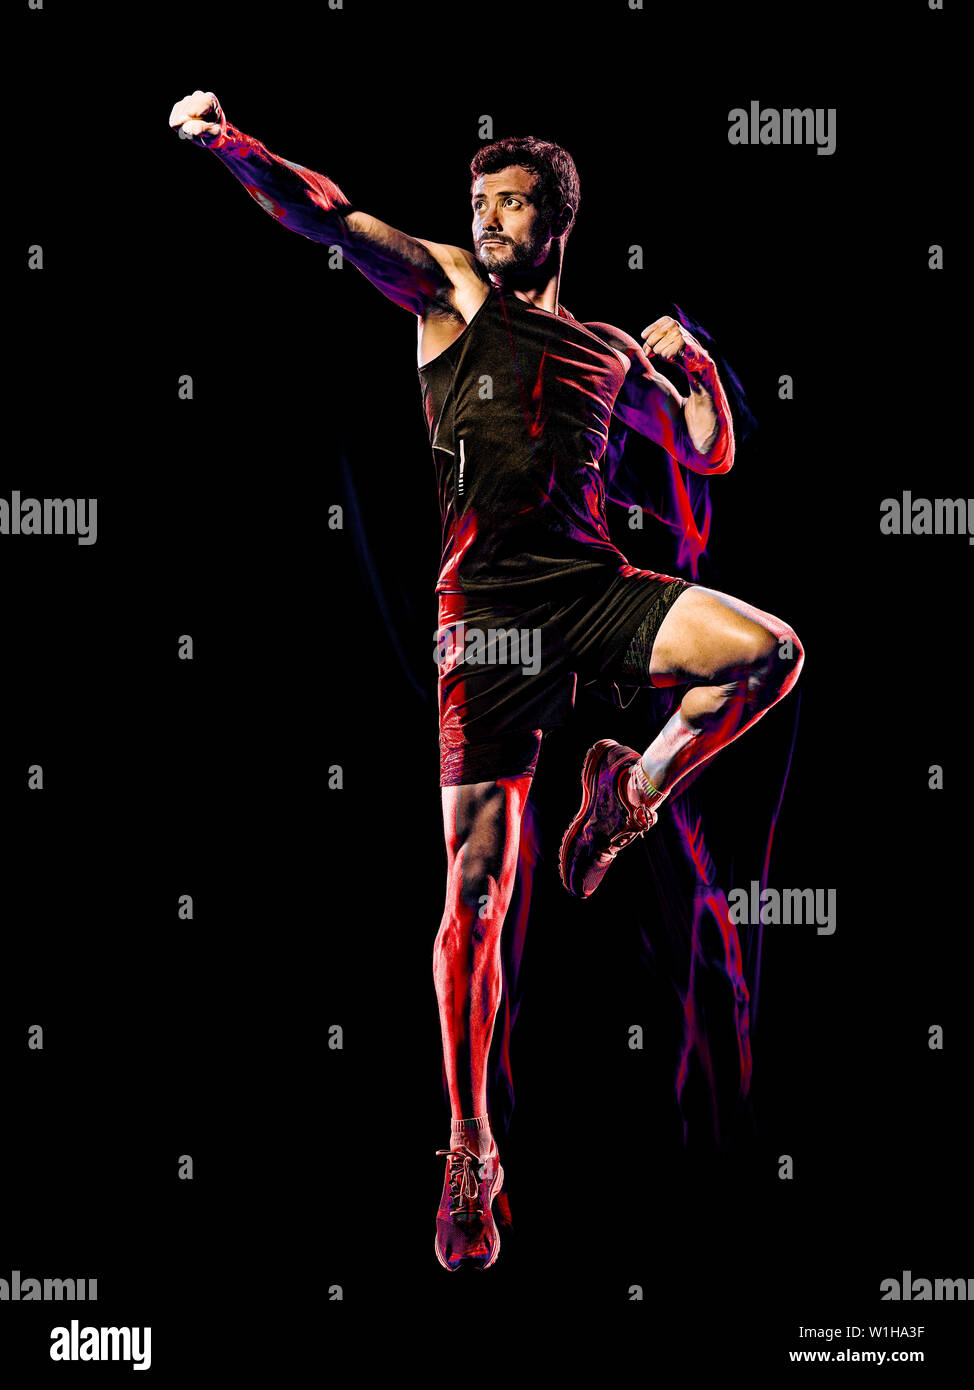 Eine kaukasische player Mann trainieren Fitness Cardio Boxing übung Body Combat studio Schuß auf schwarzen Hintergrund mit Licht malen blur Effekt isoliert Stockfoto